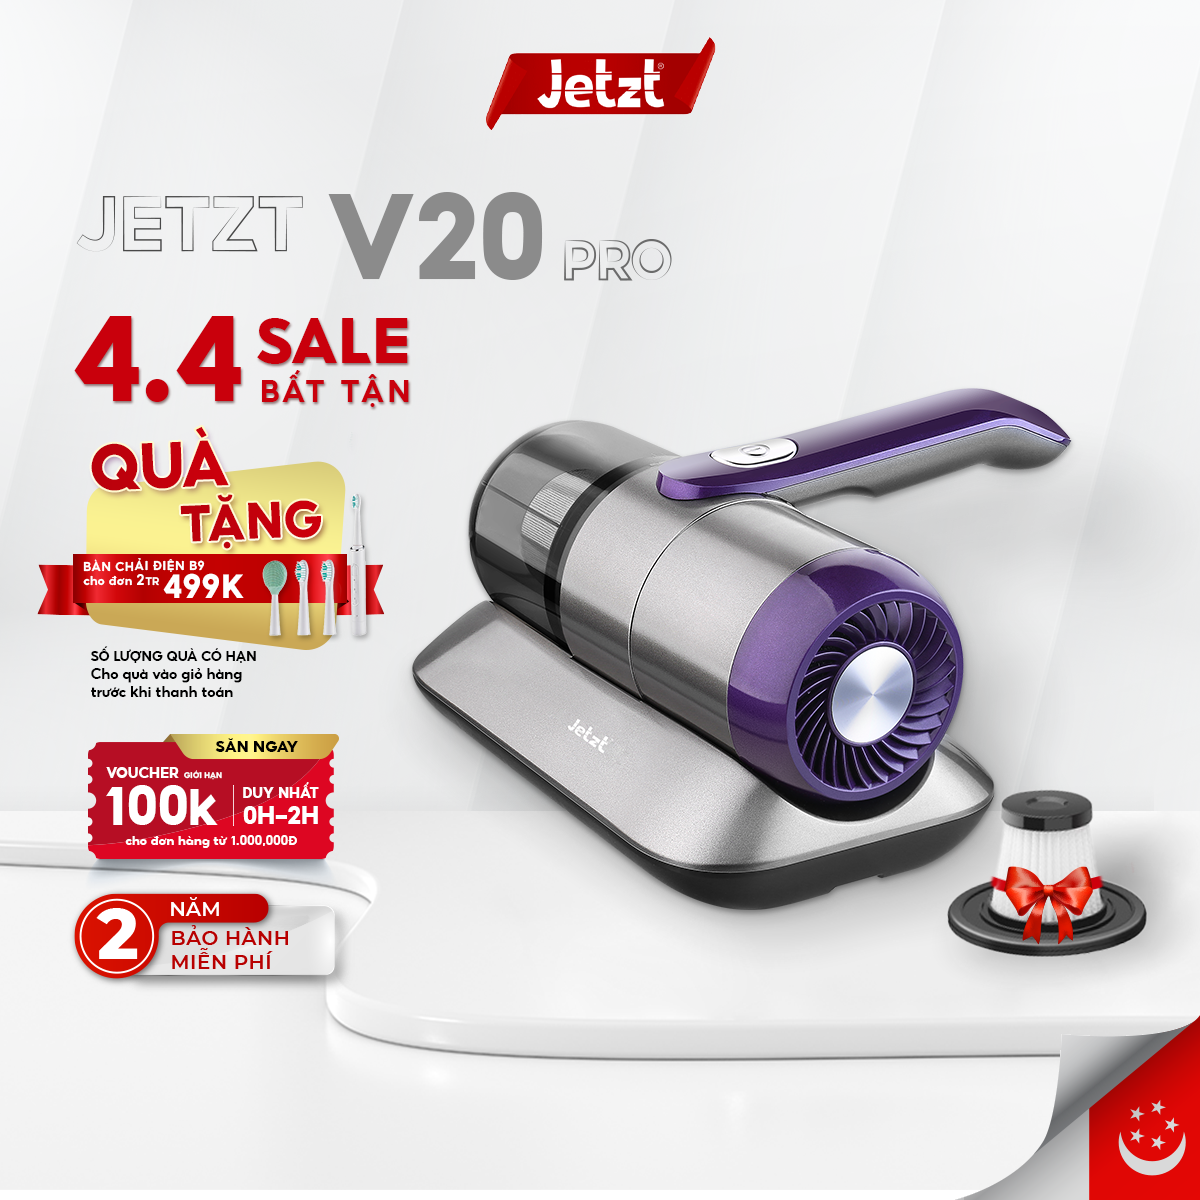 Máy hút bụi giường nệm diệt khuẩn UV Jetzt V20 Pro không dây cầm tay, hàng chính hãng